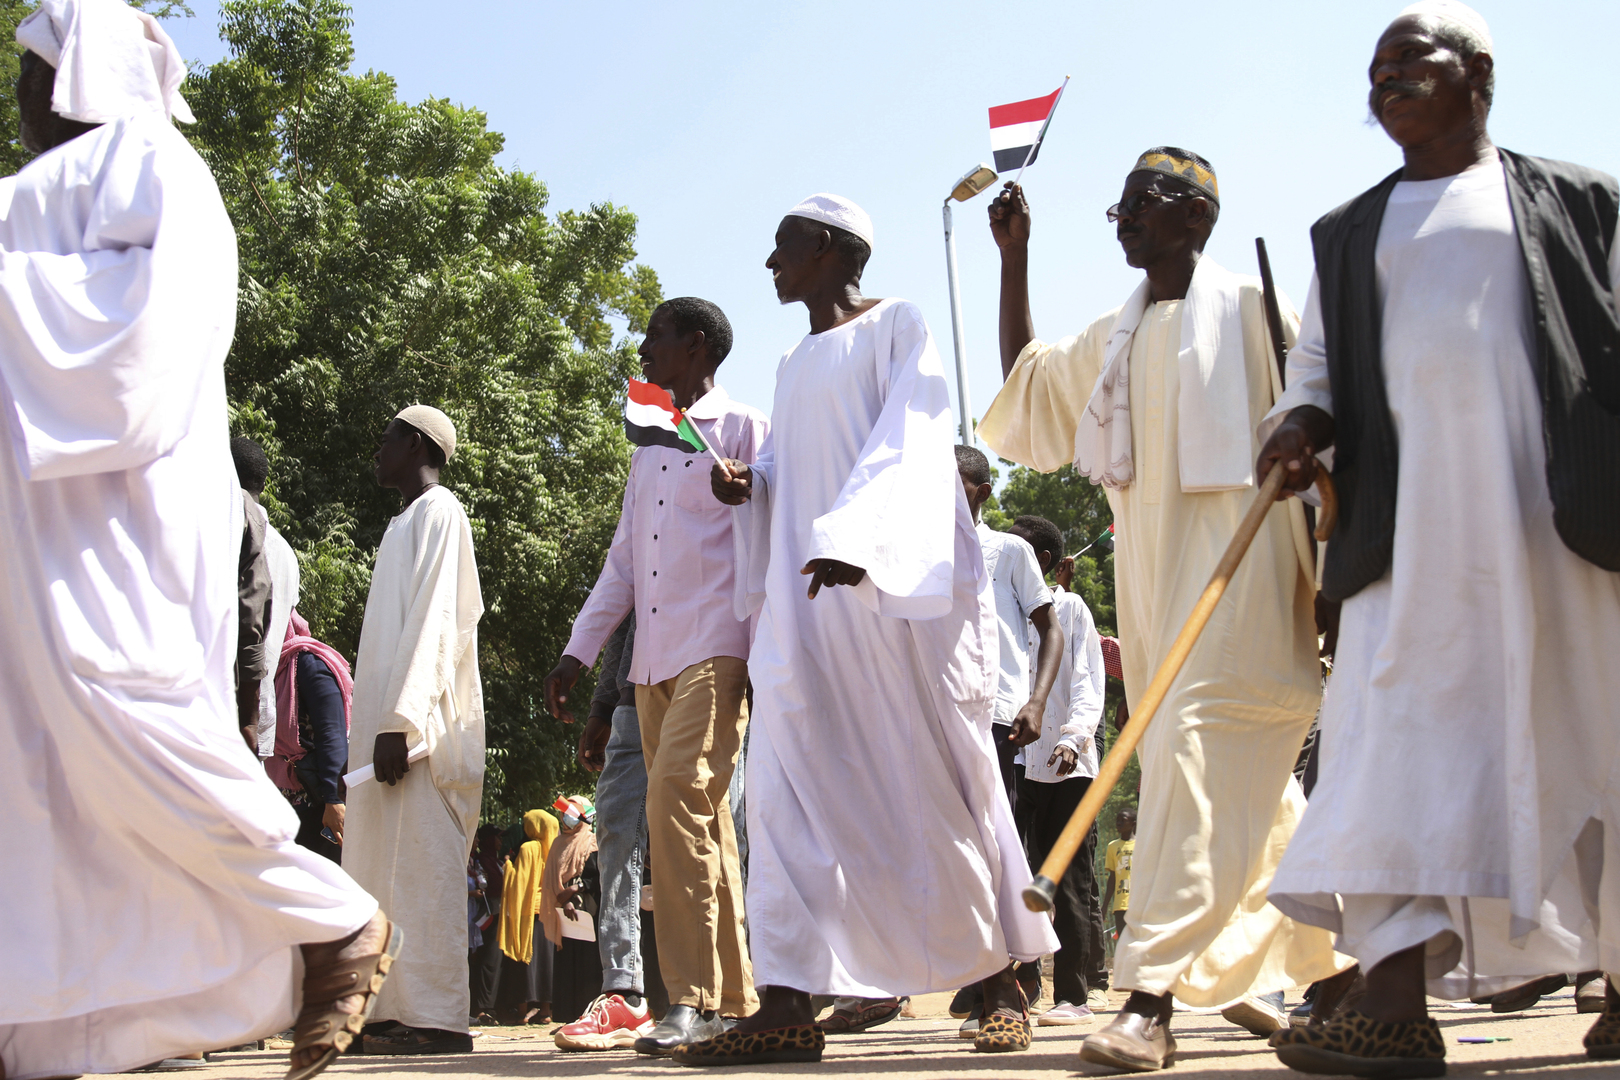 الجيش السوداني يغلق محيط قيادته على خلفية مظاهرات جديدة مؤيدة للحكم المدني في الخرطوم